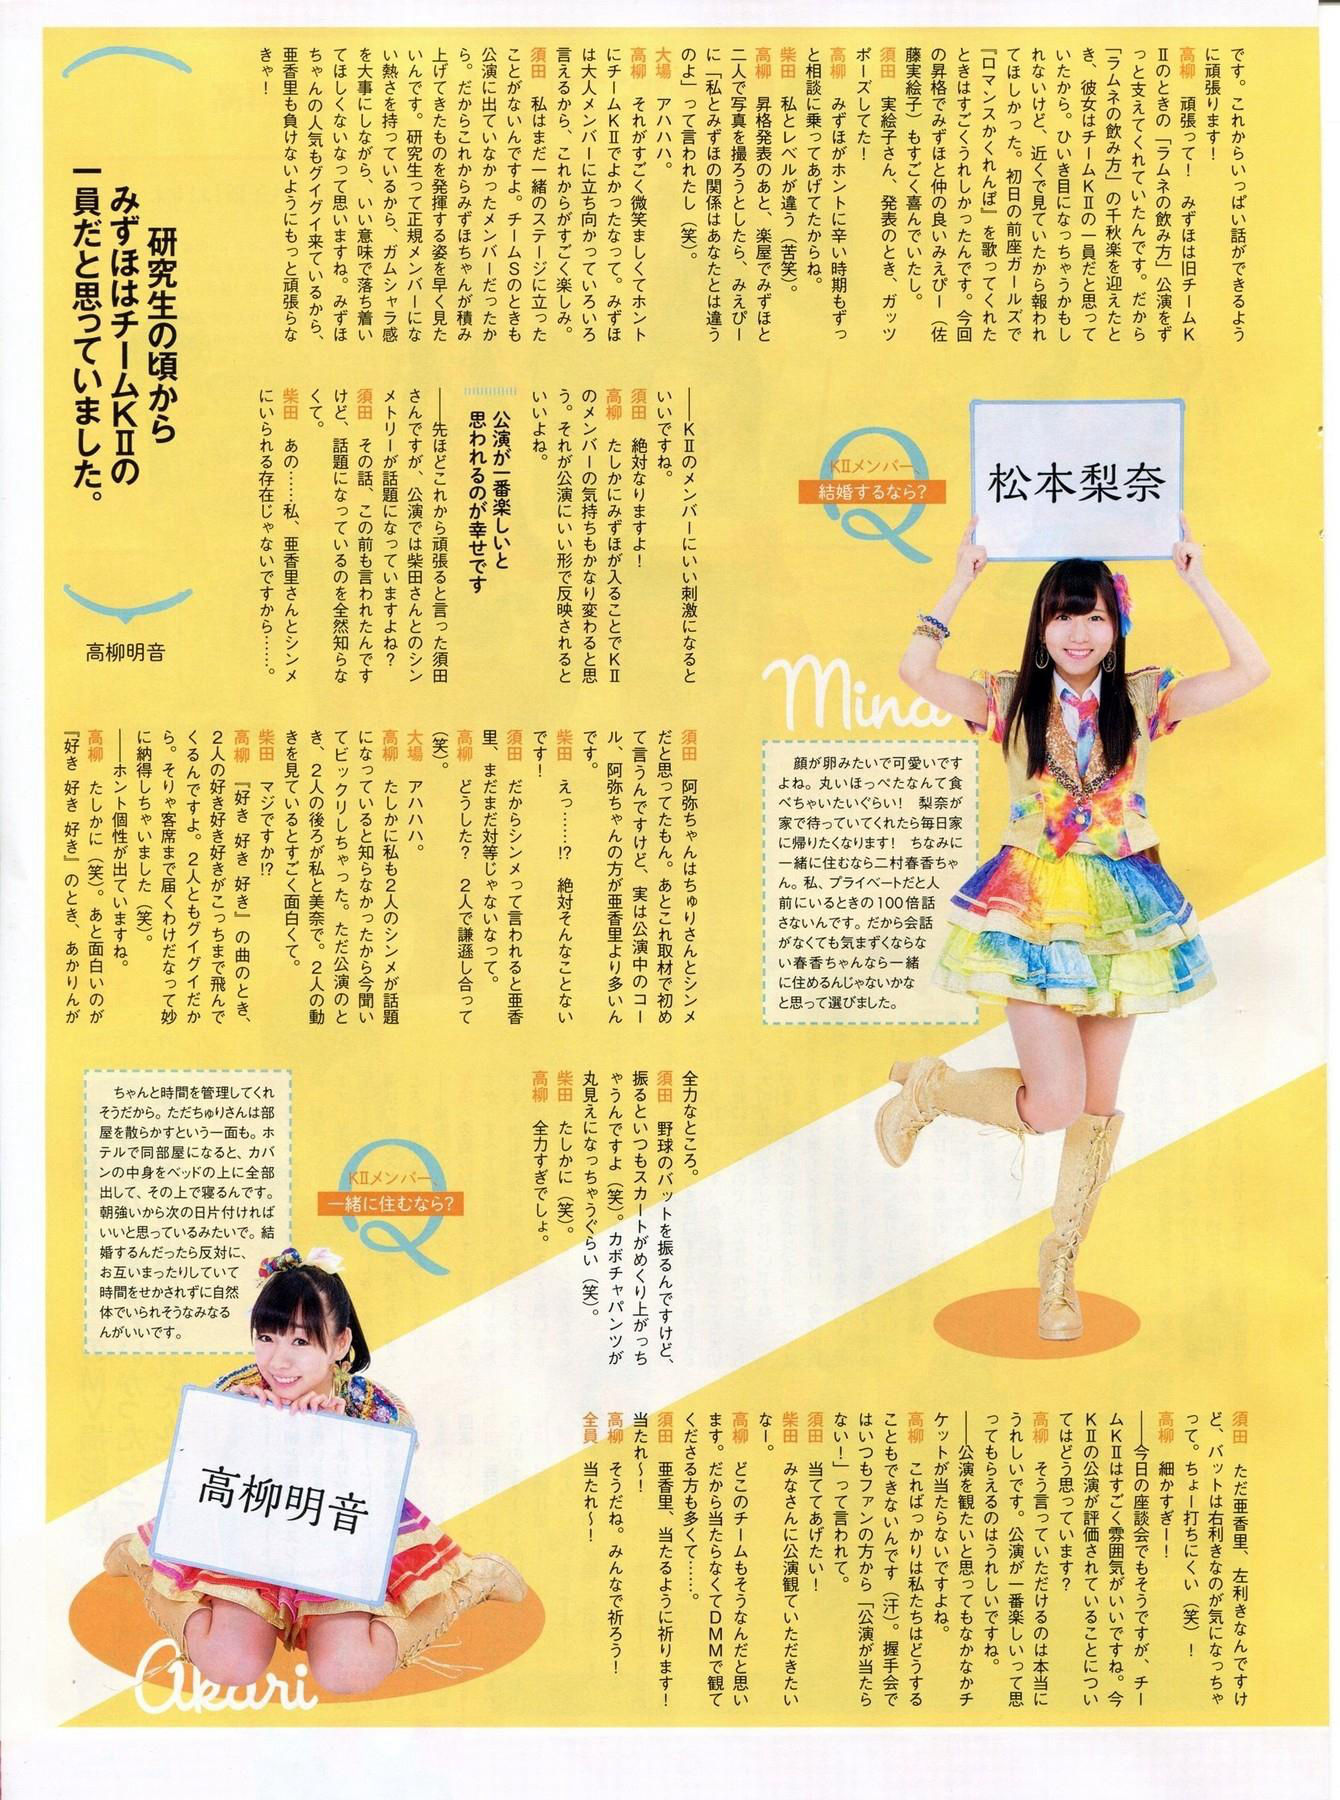 [ENTAME] Nana Yamada Mayu Ogasawara Fuko Yagura Reika Sakurai Yumi Wakatsuki January 2014 issue Photograph Page 19 No.588abe